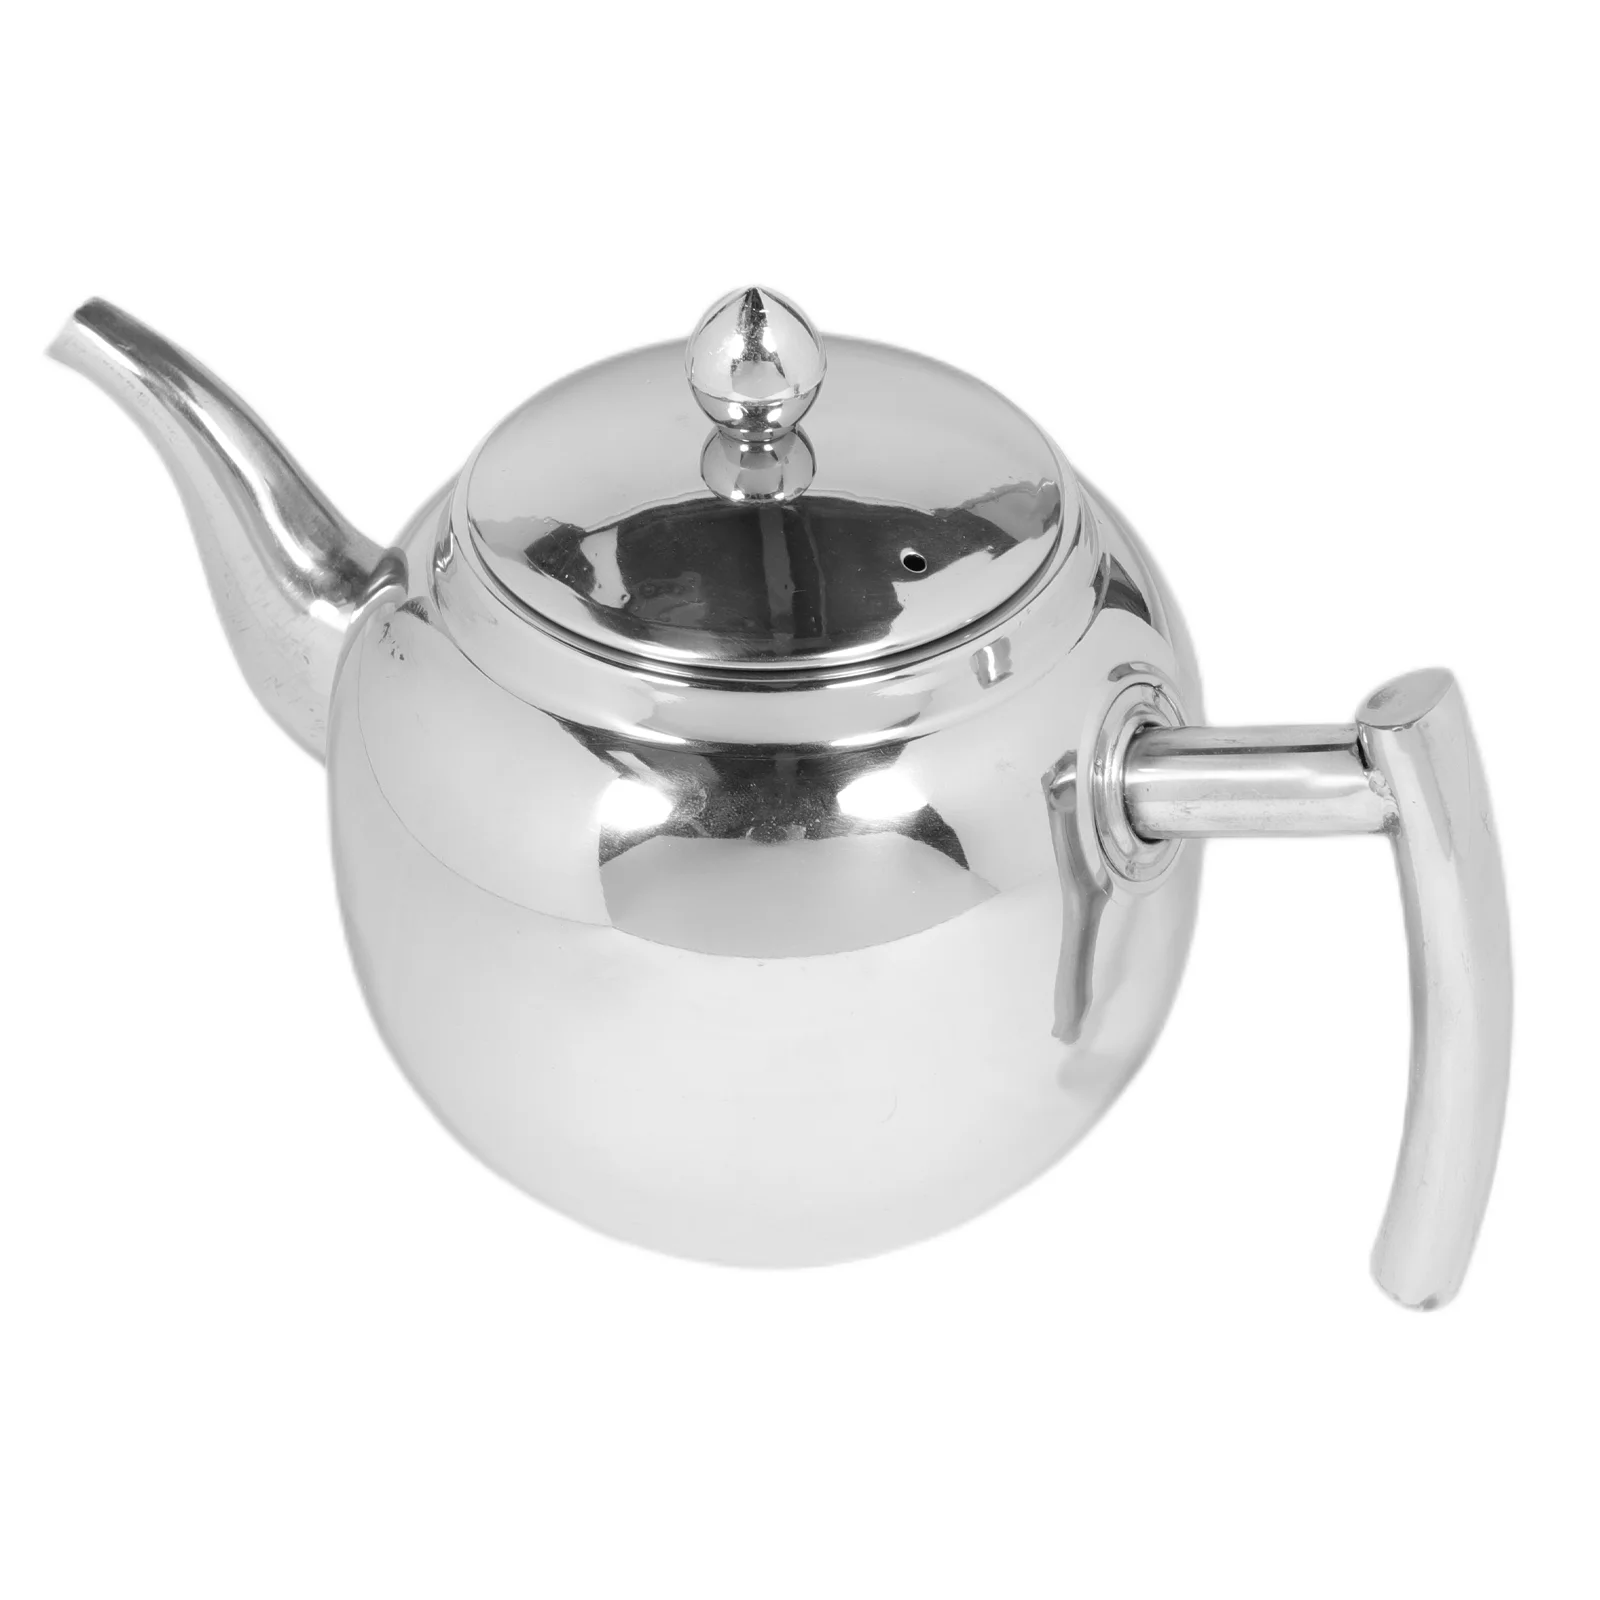 

1 шт. домашний чайник для воды, чайник для кипячения воды, чайник для чая, кофейник (серебристый)